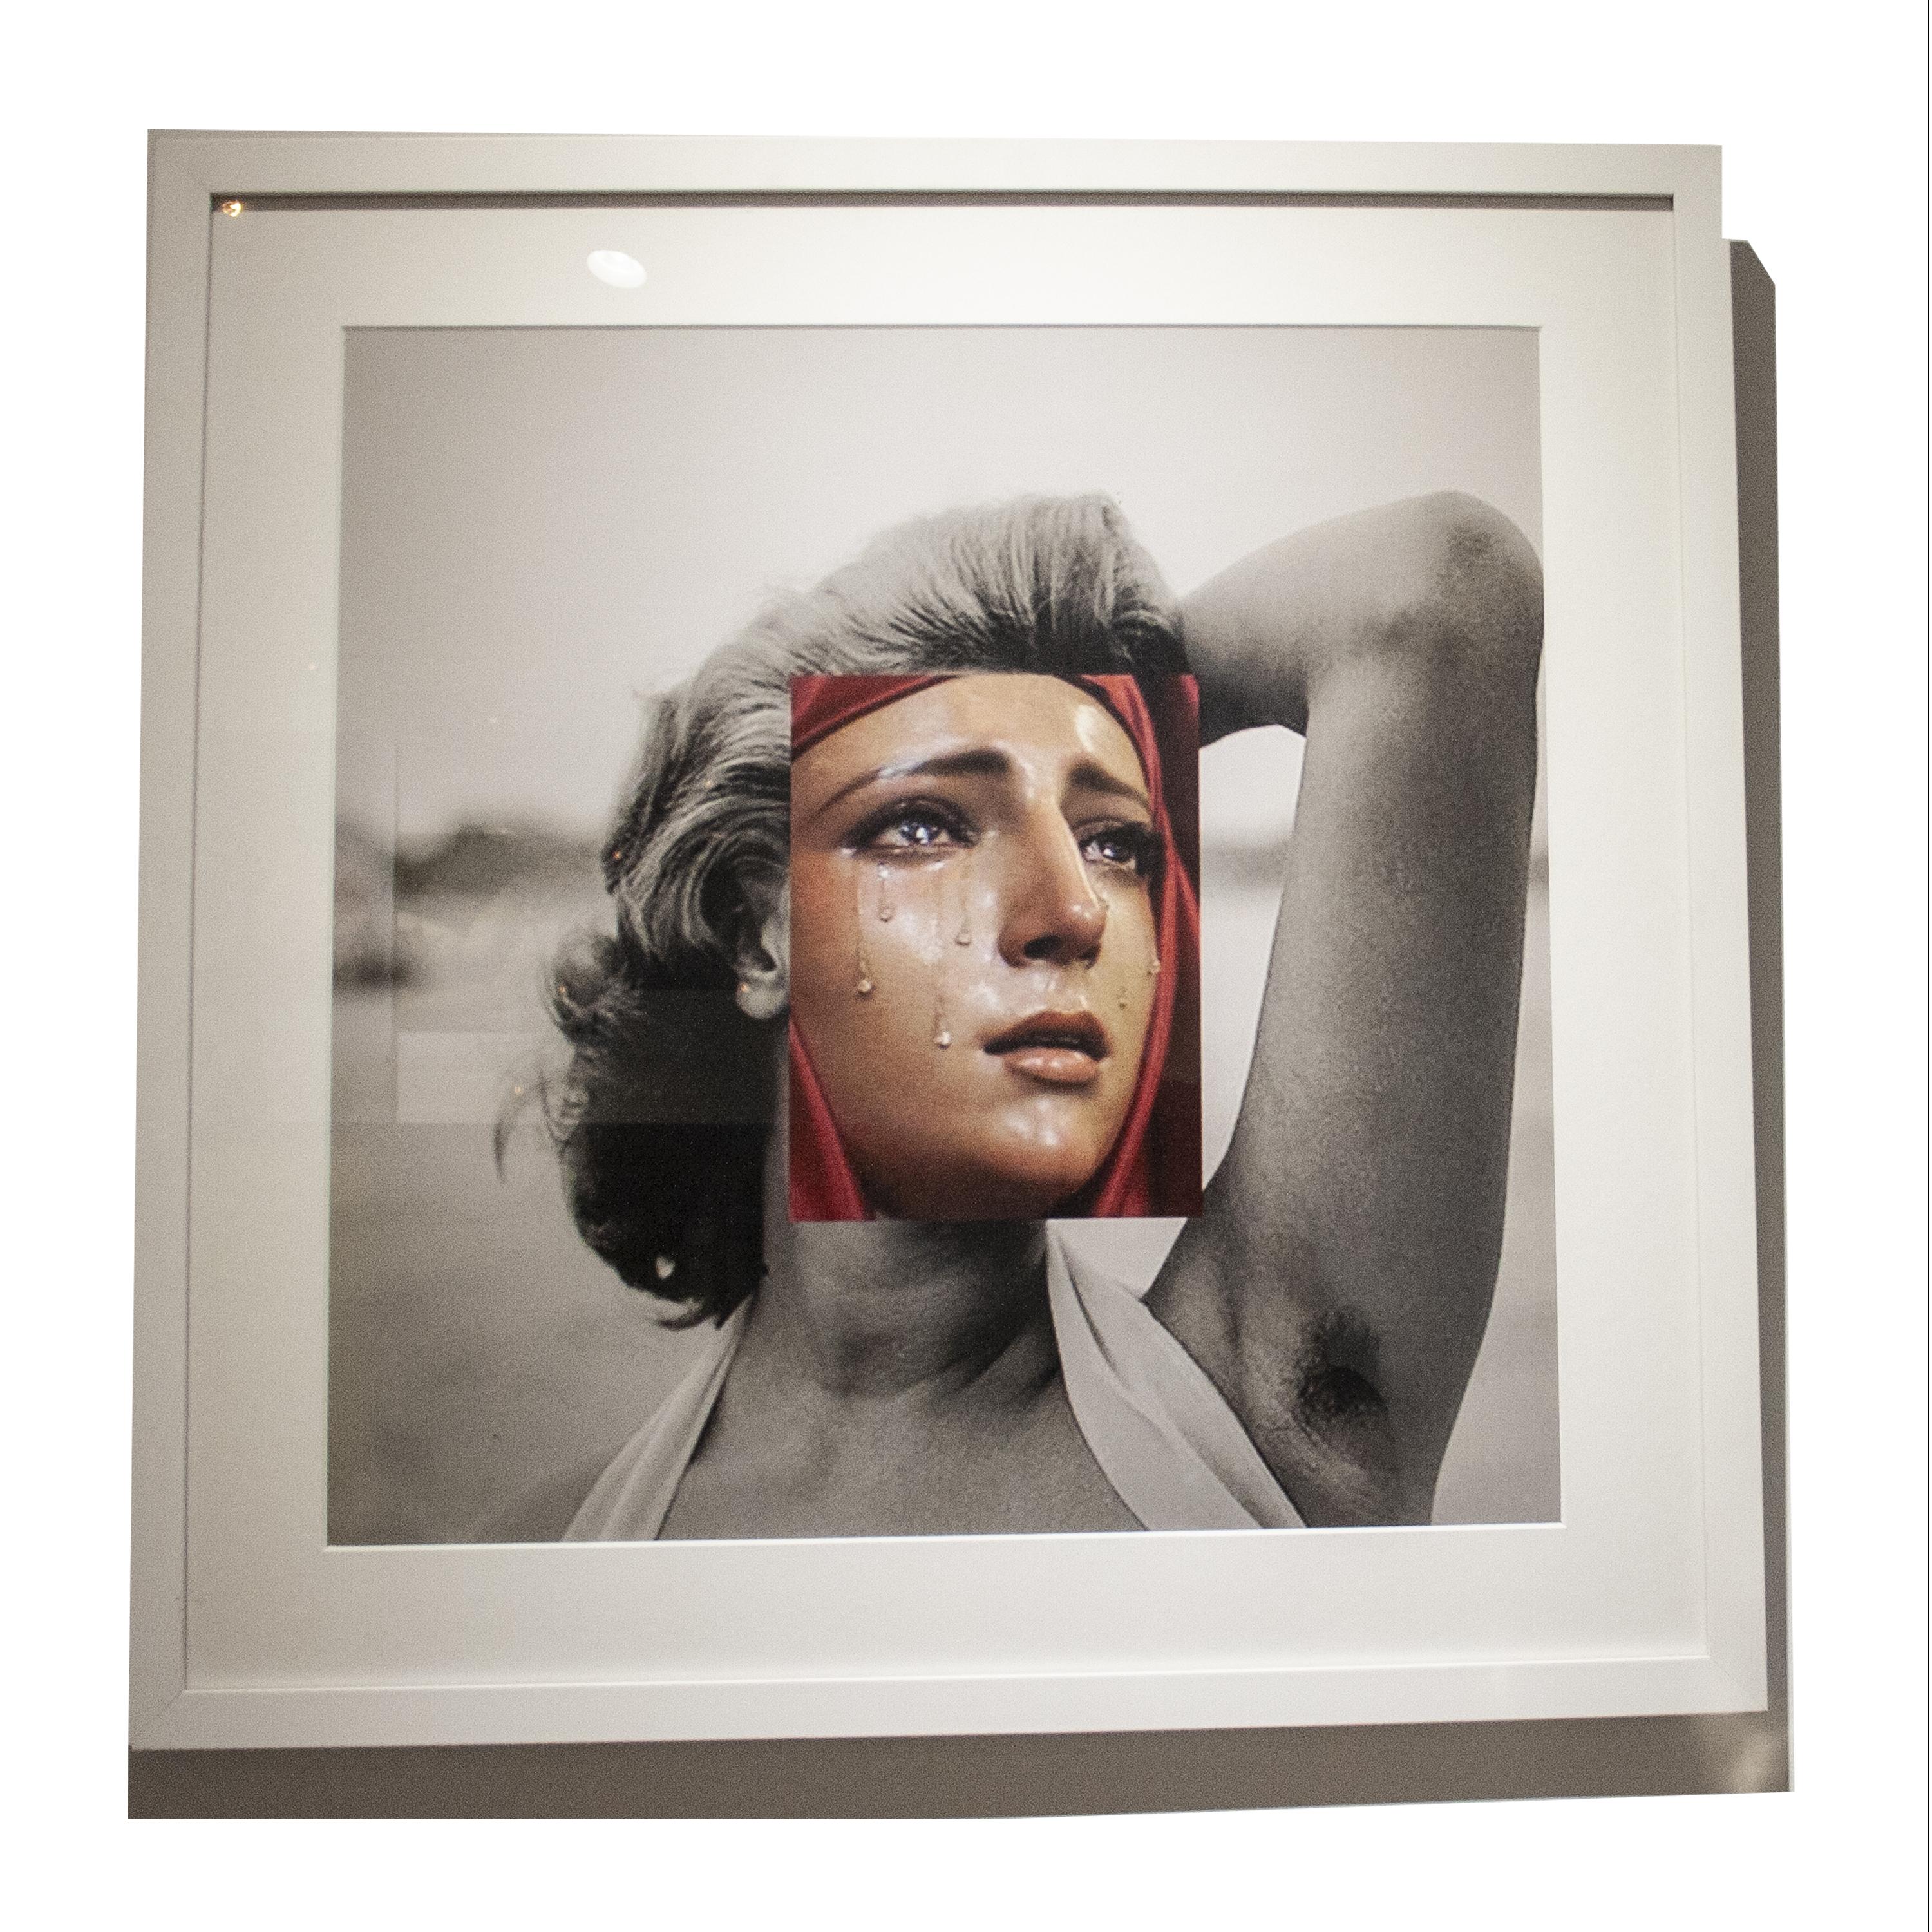 Sophia Loren und Jungfrau Maria digitale Collage Druck von spanischen Künstler Naro Pinosa, berühmt geworden in den sozialen Medien. Echtheitszertifikat.
Druck auf Fotopapier. Glas und weiß lackierter Holzrahmen.